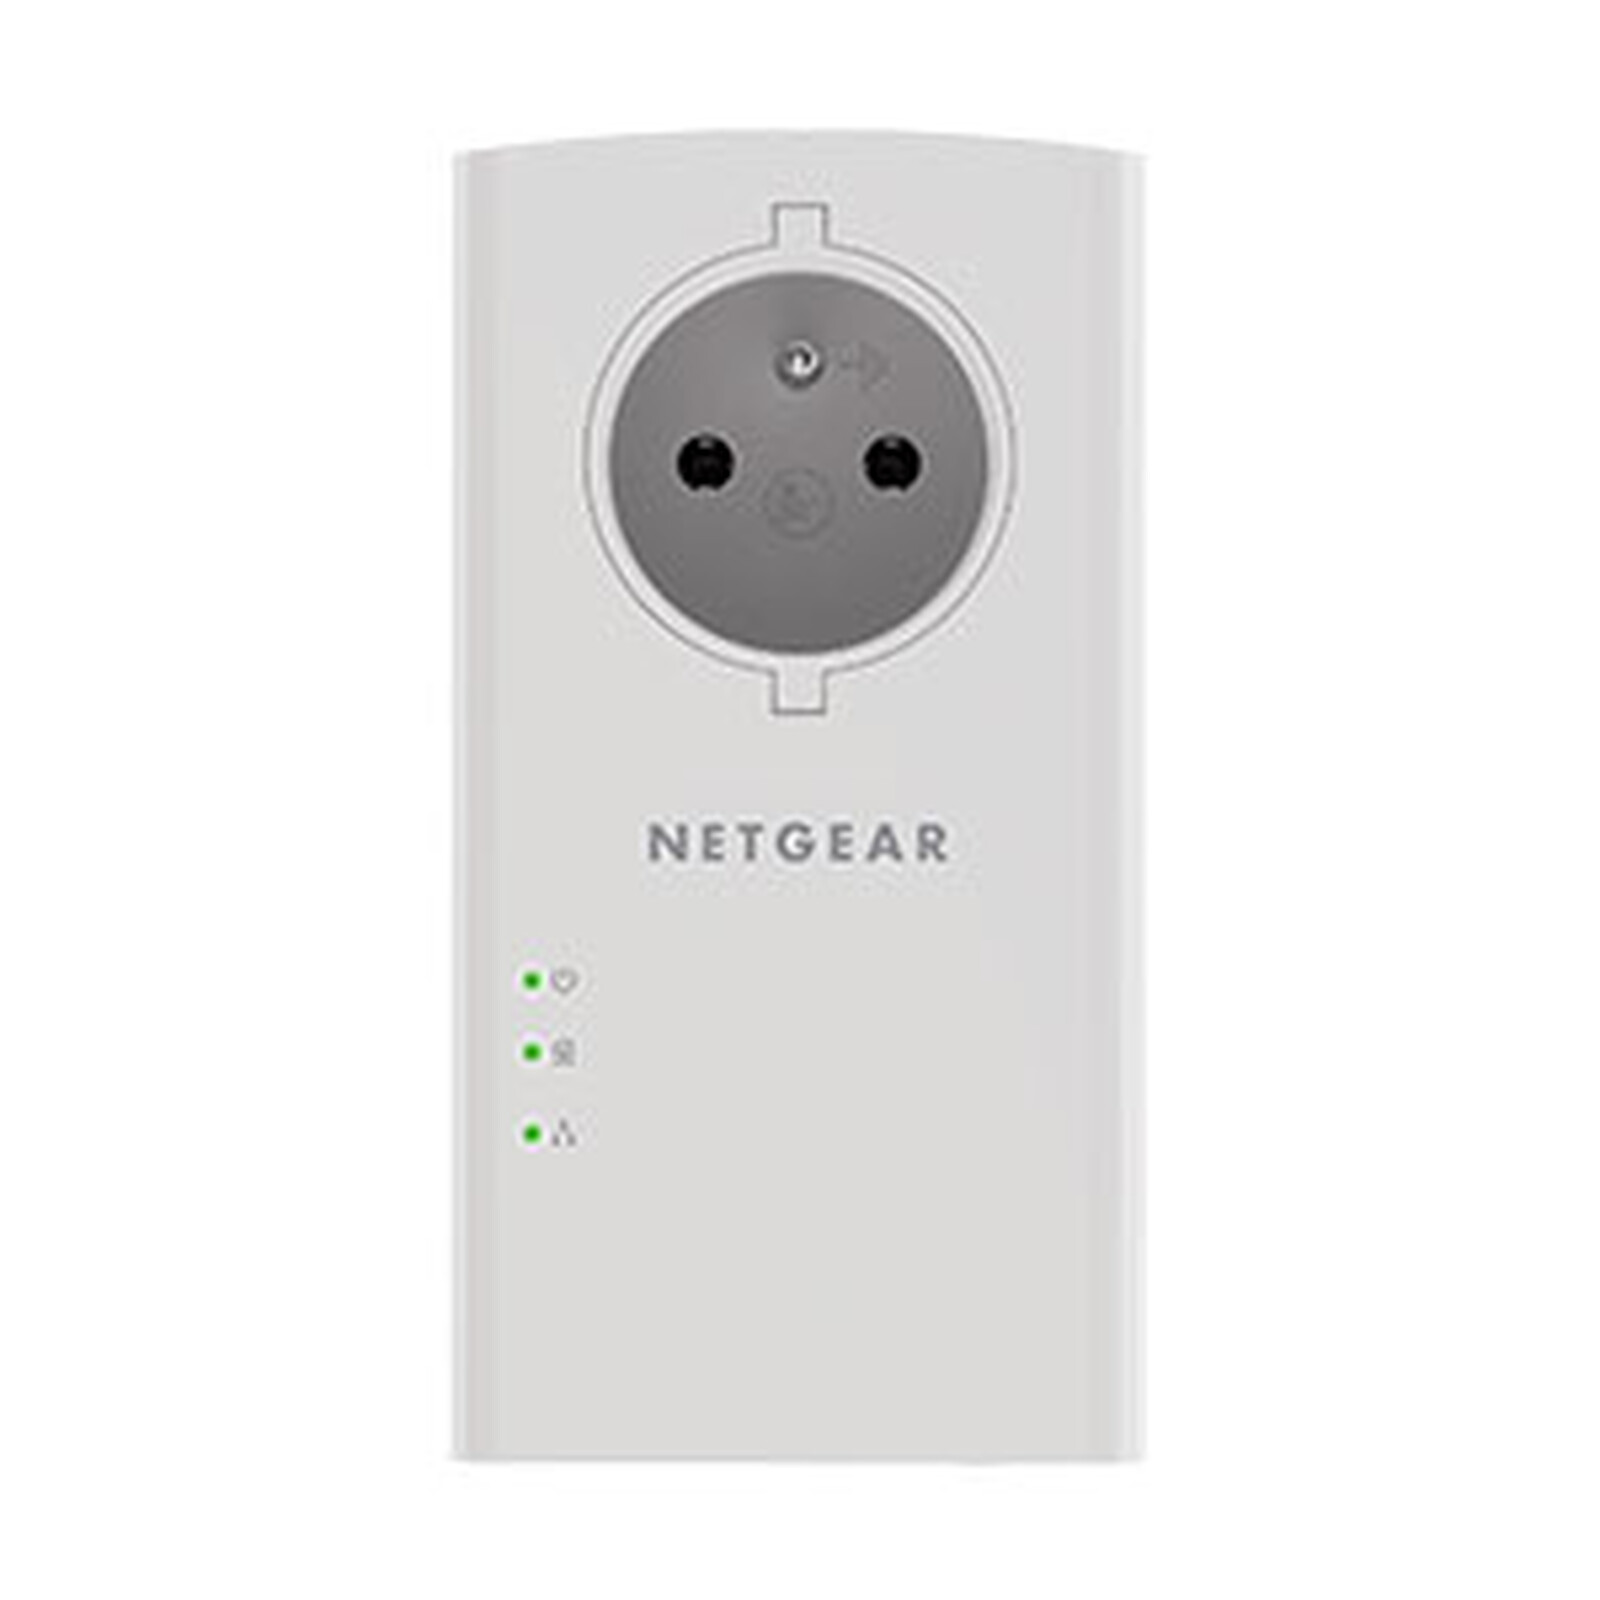 Netgear ajoute une seconde prise Ethernet à son kit CPL